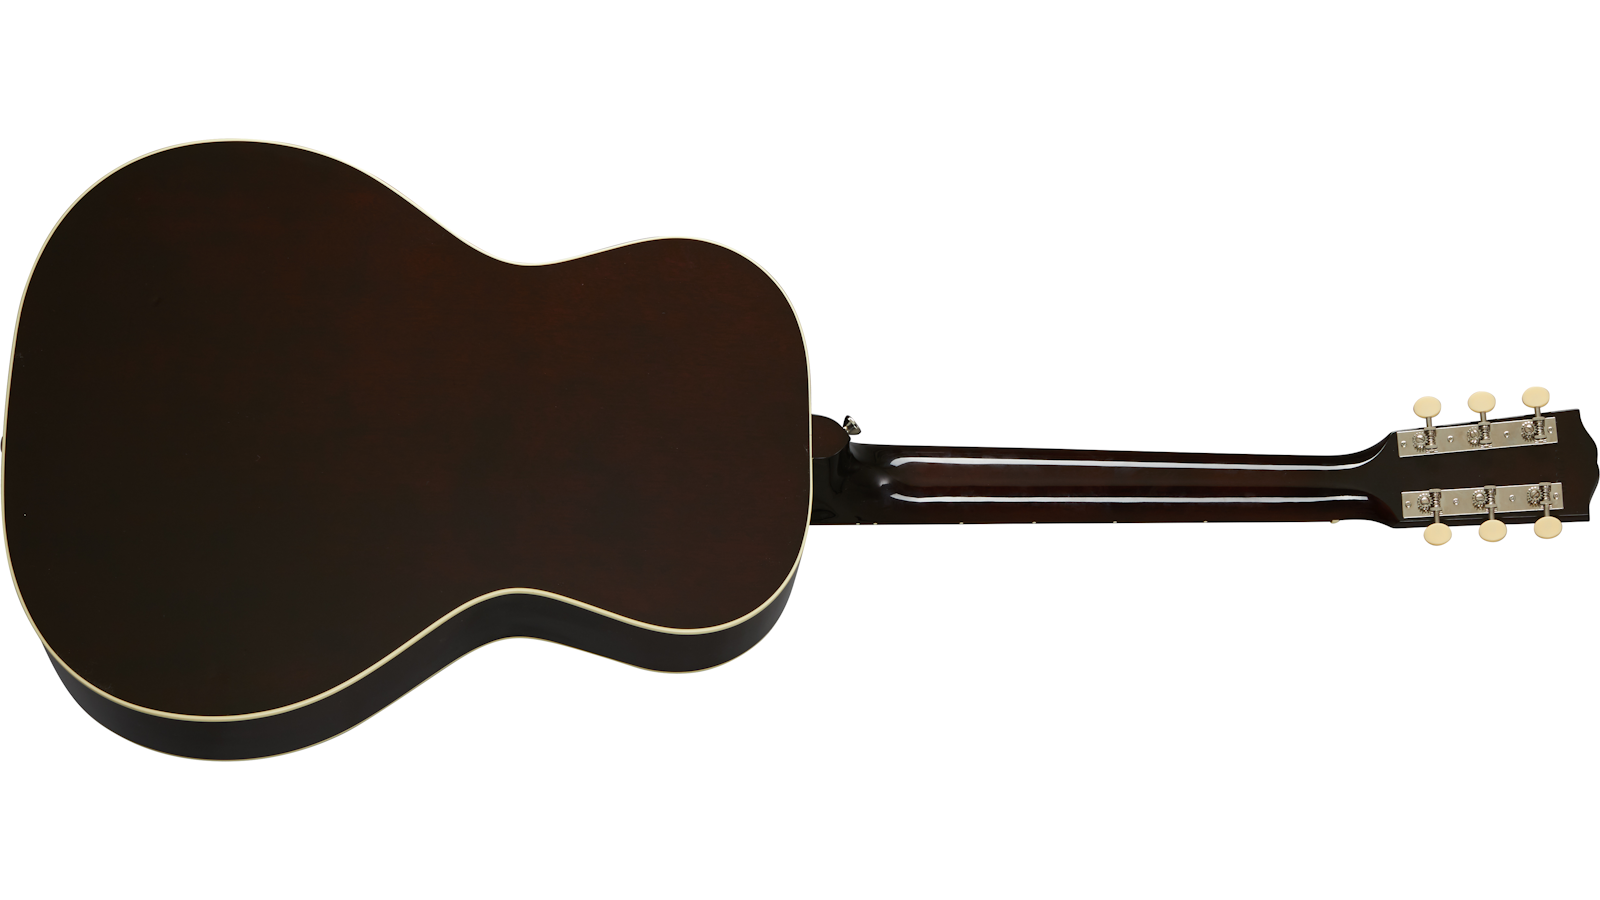 Gibson L-00 Original Lh 2020 Parlor Gaucher Epicea Acajou Rw - Vintage Sunburst - Electro acoustic guitar - Variation 1